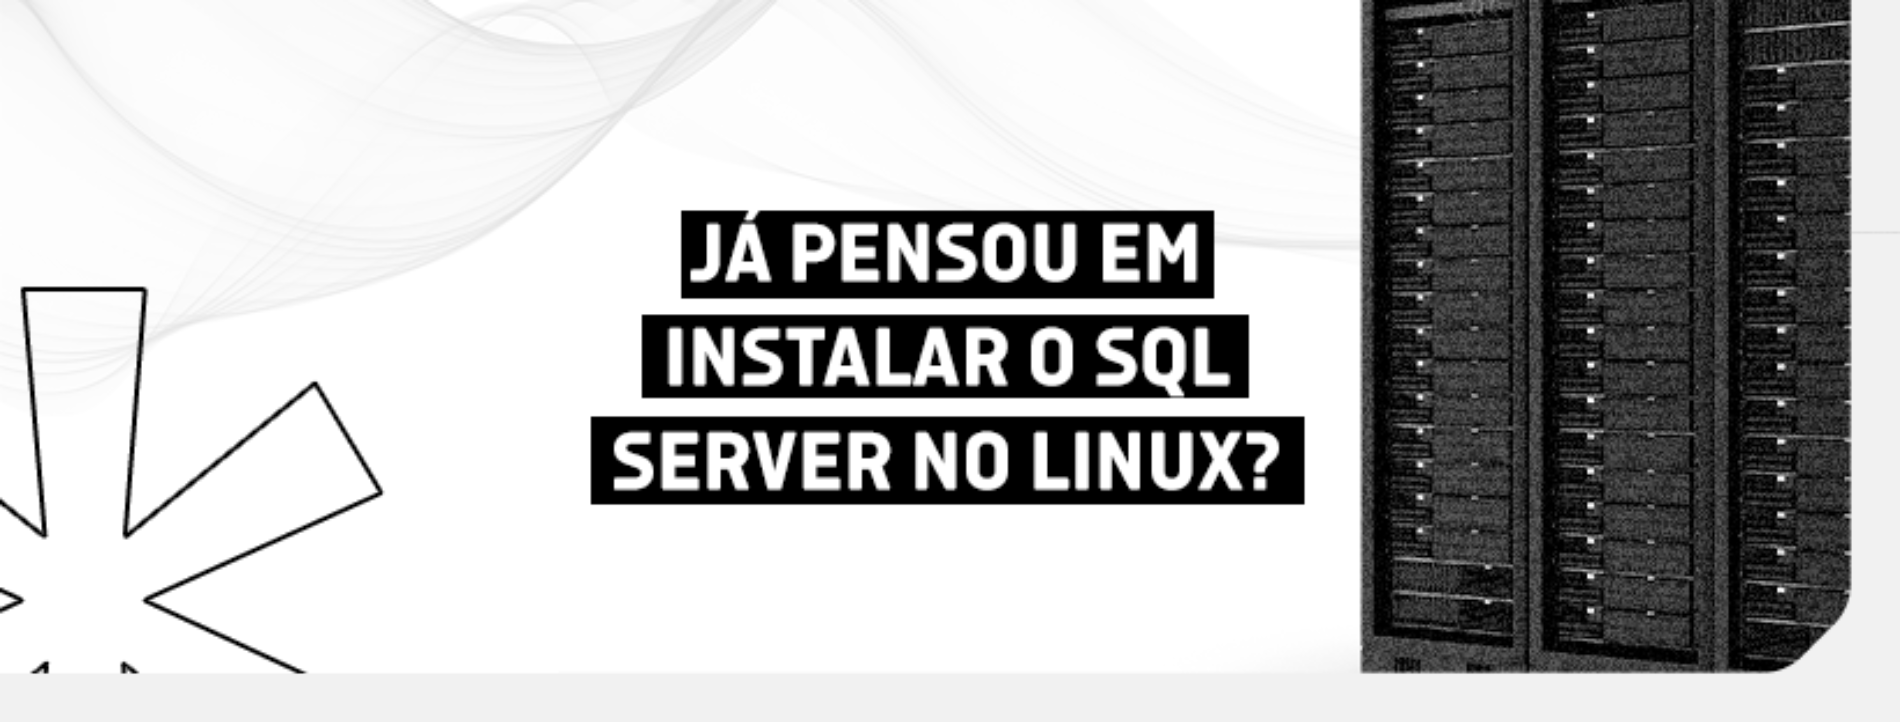 Já pensou em instalar o SQL Server no Linux?